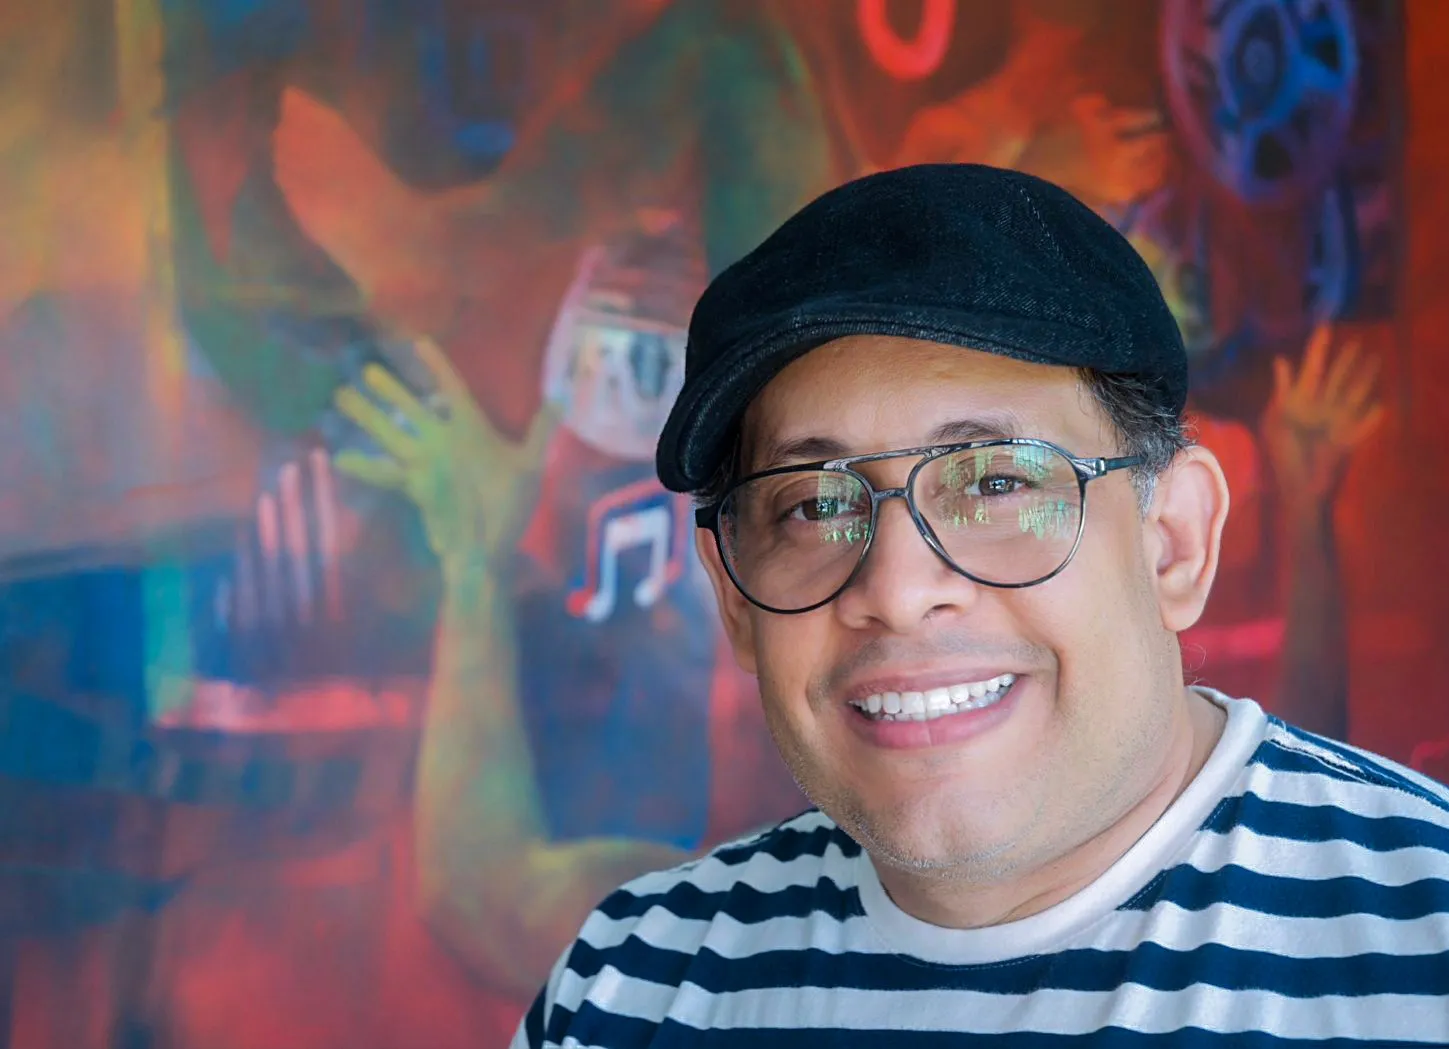 APEC Cultural presenta “Antología”, del destacado pintor Omar Molina